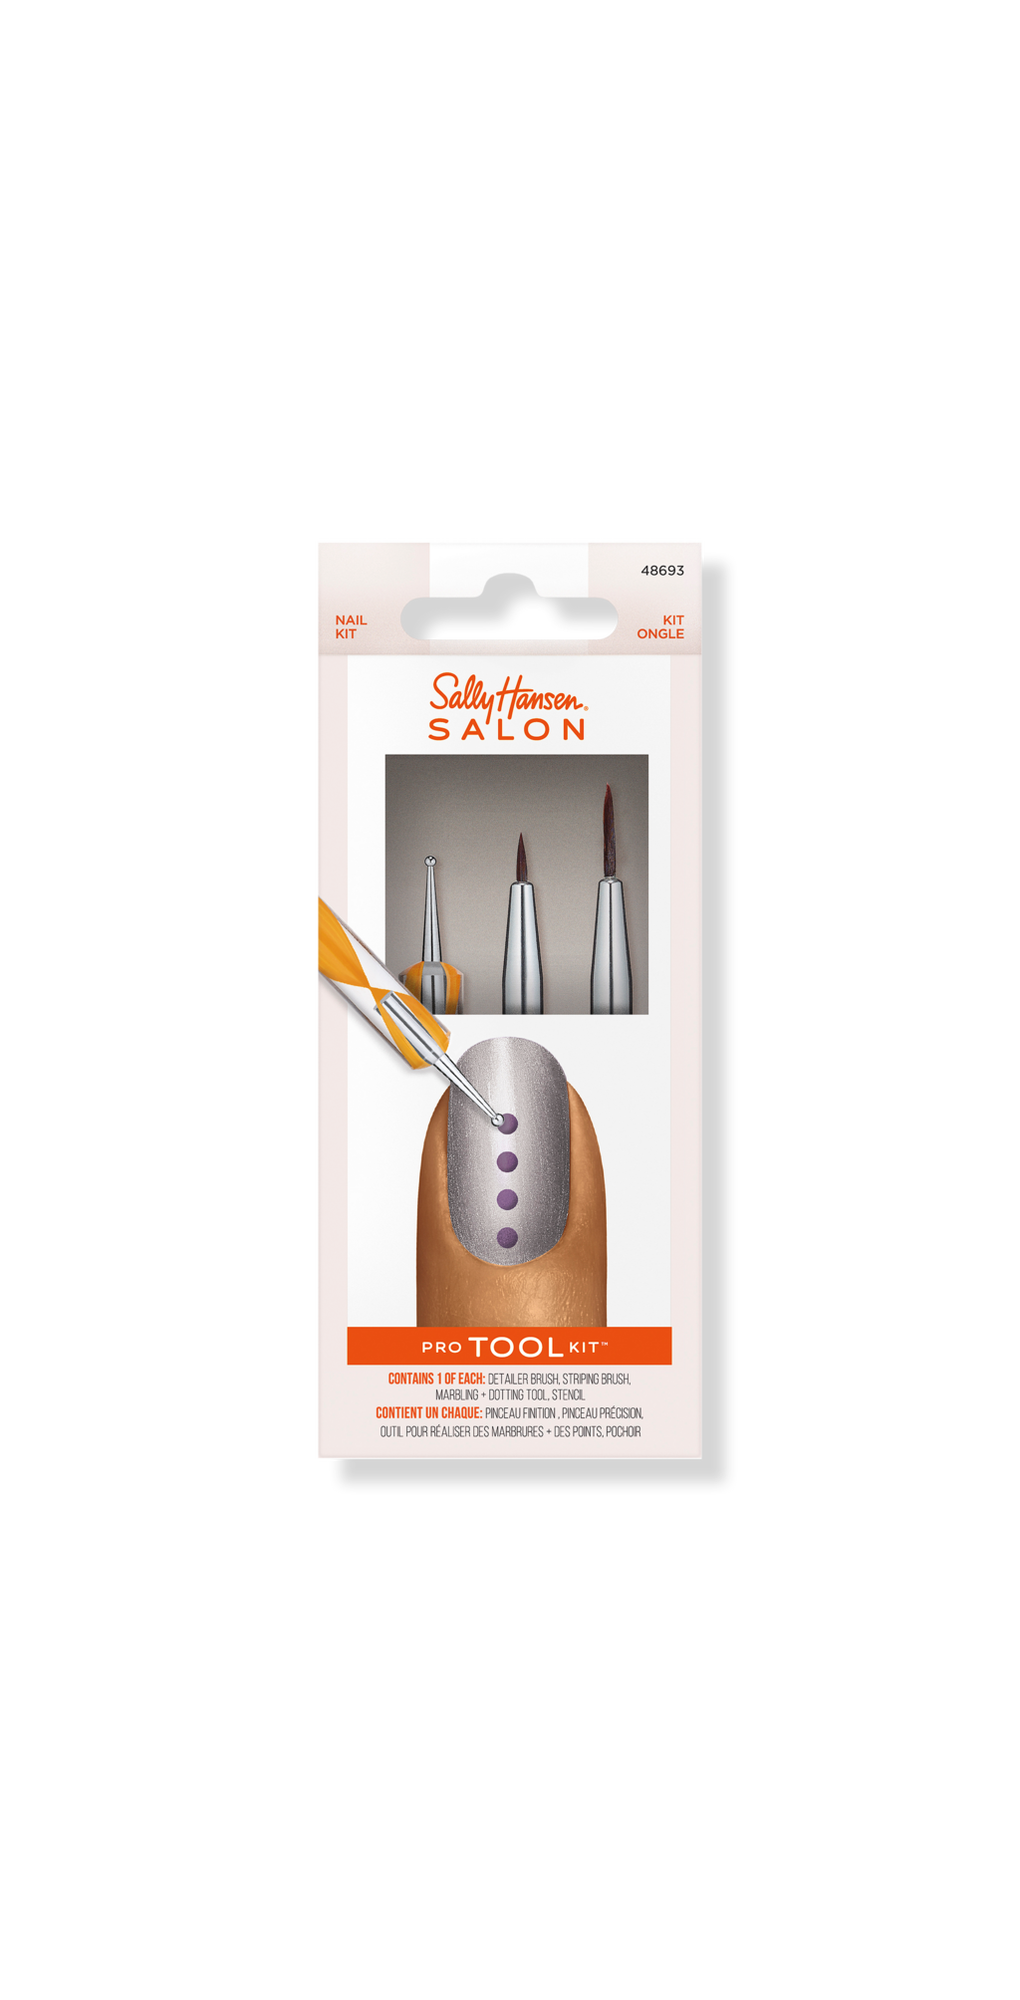 Nail Salon Pro Tool Kit - Sally Hansen